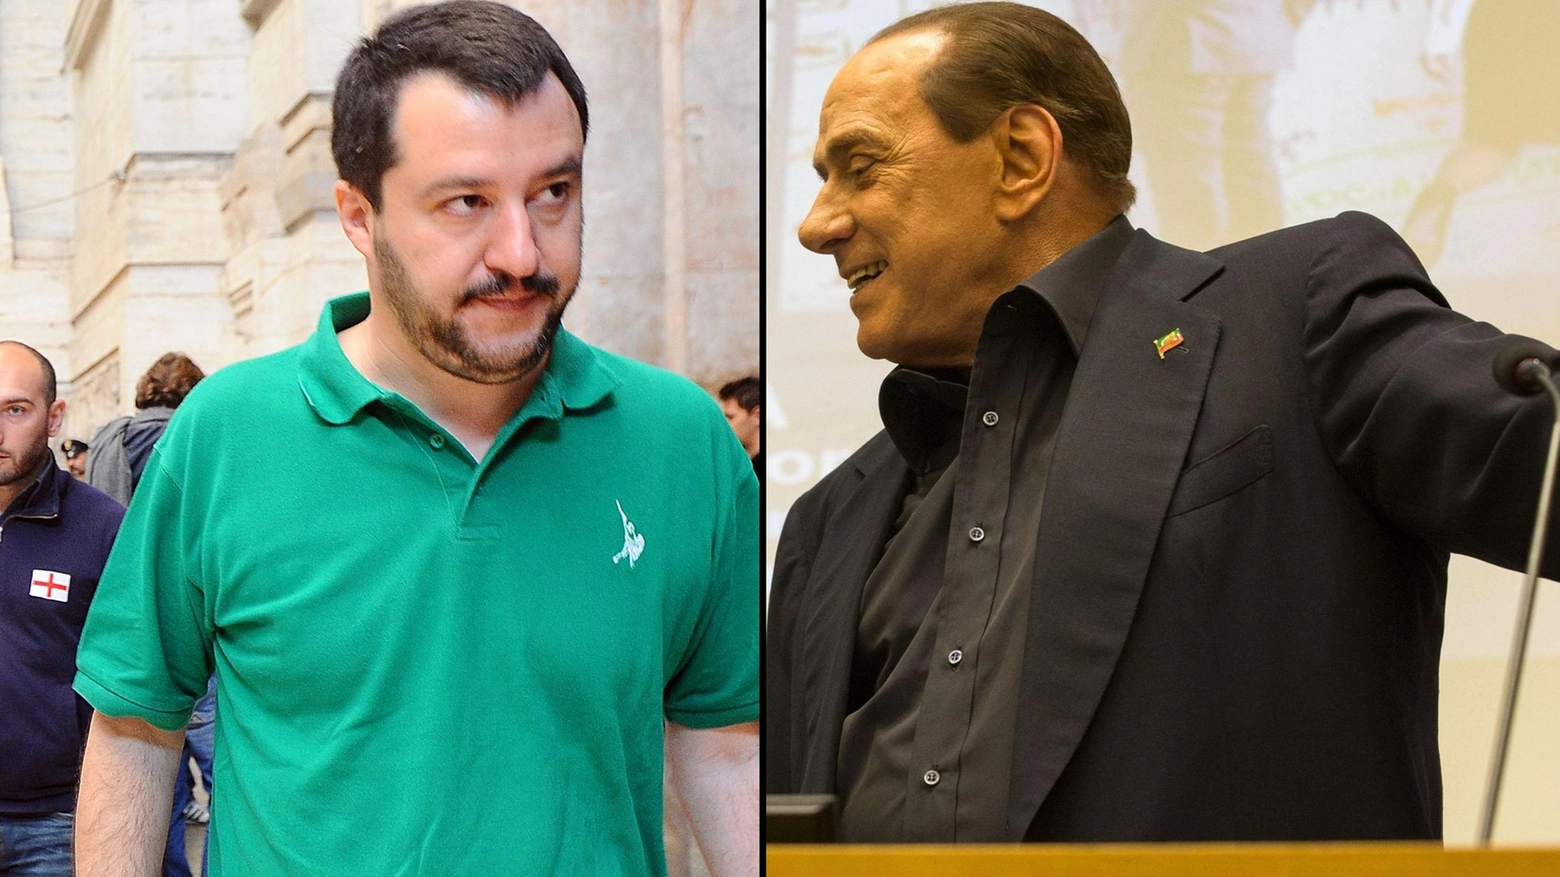 Matteo Salvini e Silvio Berlusconi